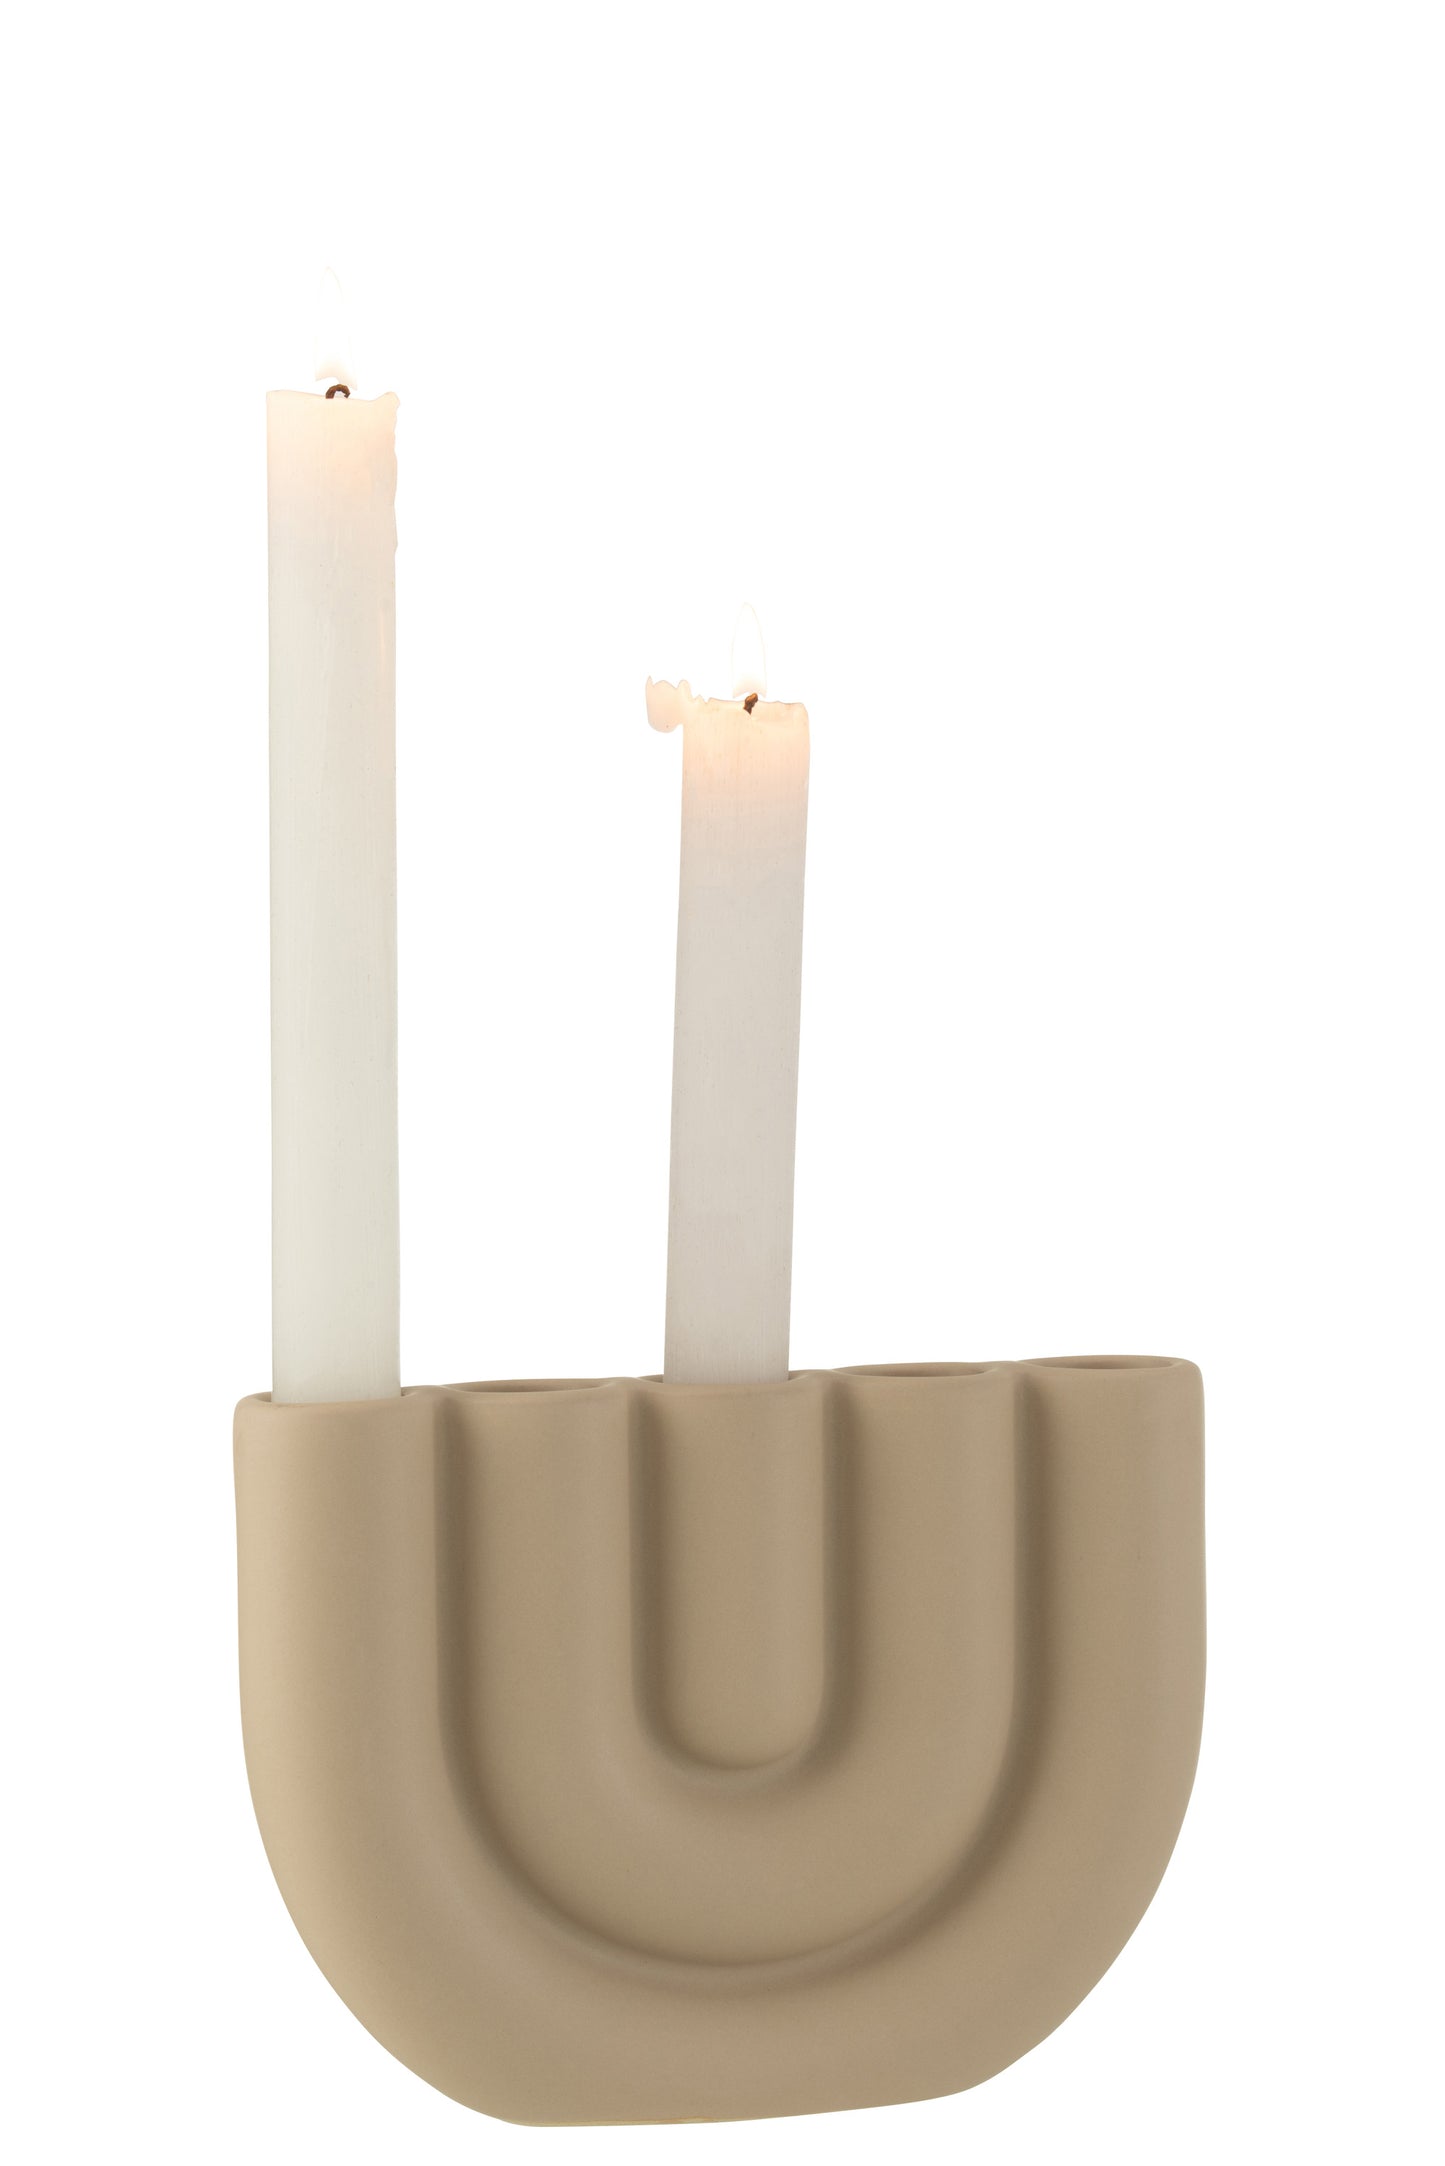 kristal Schurend Afdeling Candle holder Bow 5 candles Beige – Felika